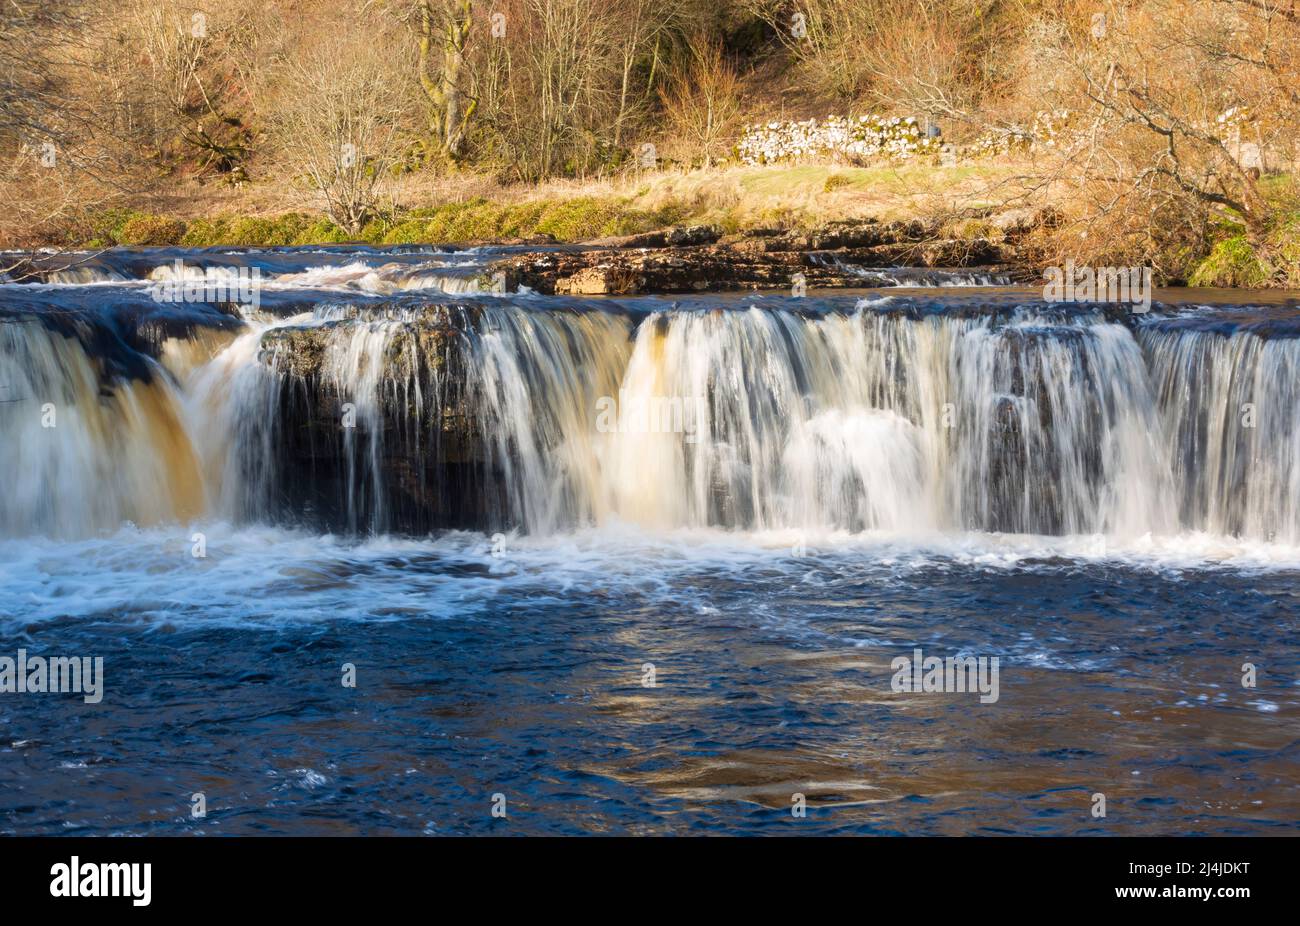 Wain WATH Force, Swaledale, Yorkshire Dales. Belle cascade près de Keld. Banque D'Images